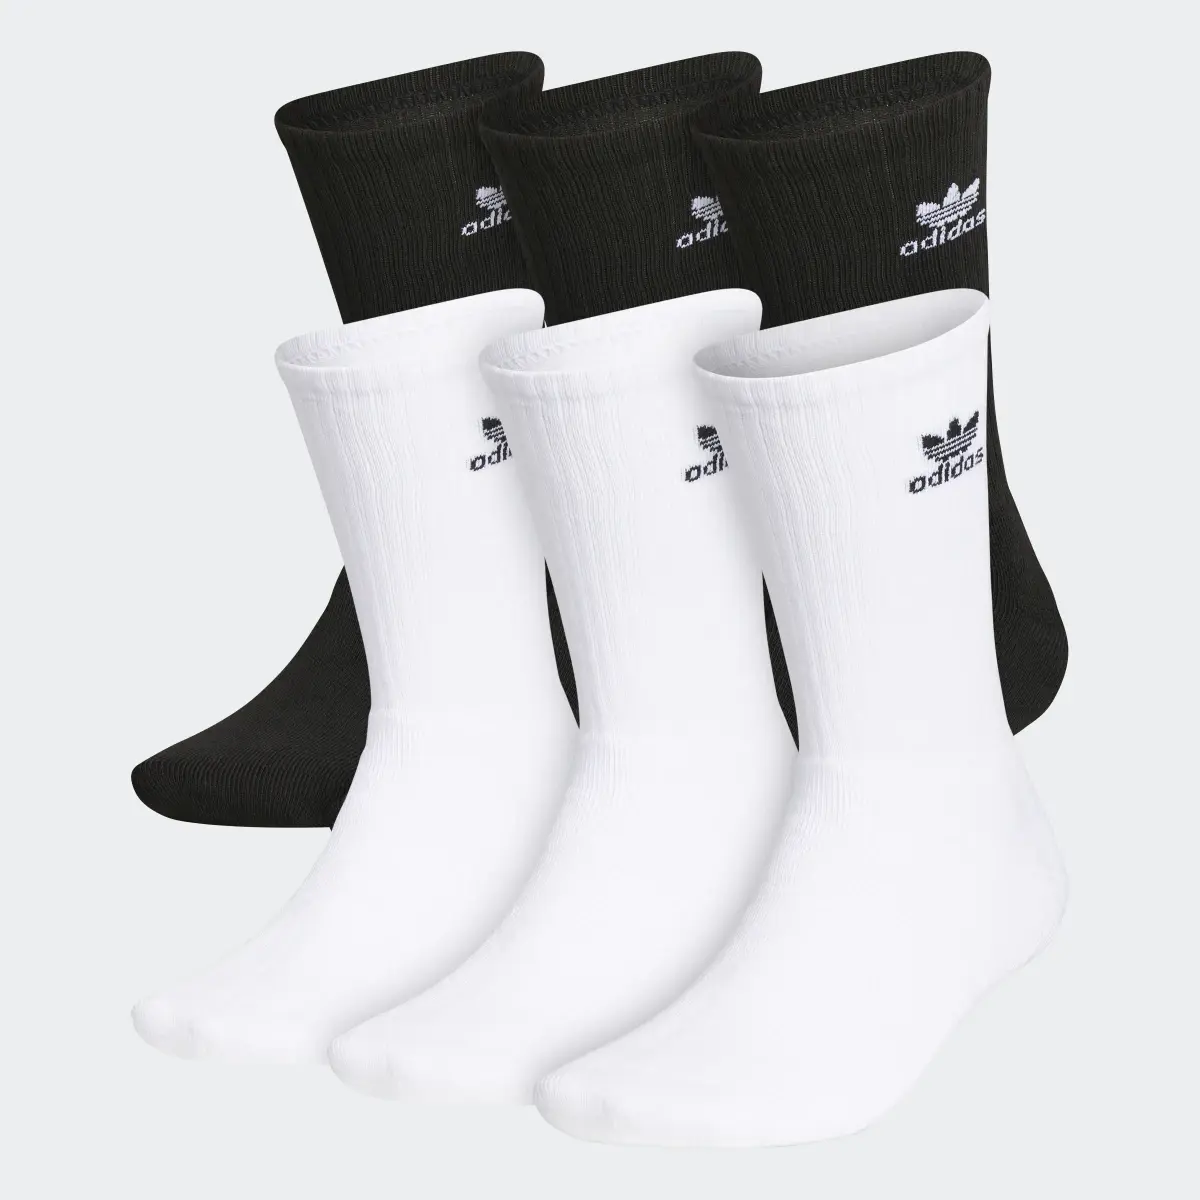 Adidas Trefoil Crew Socks 6 Pairs. 2